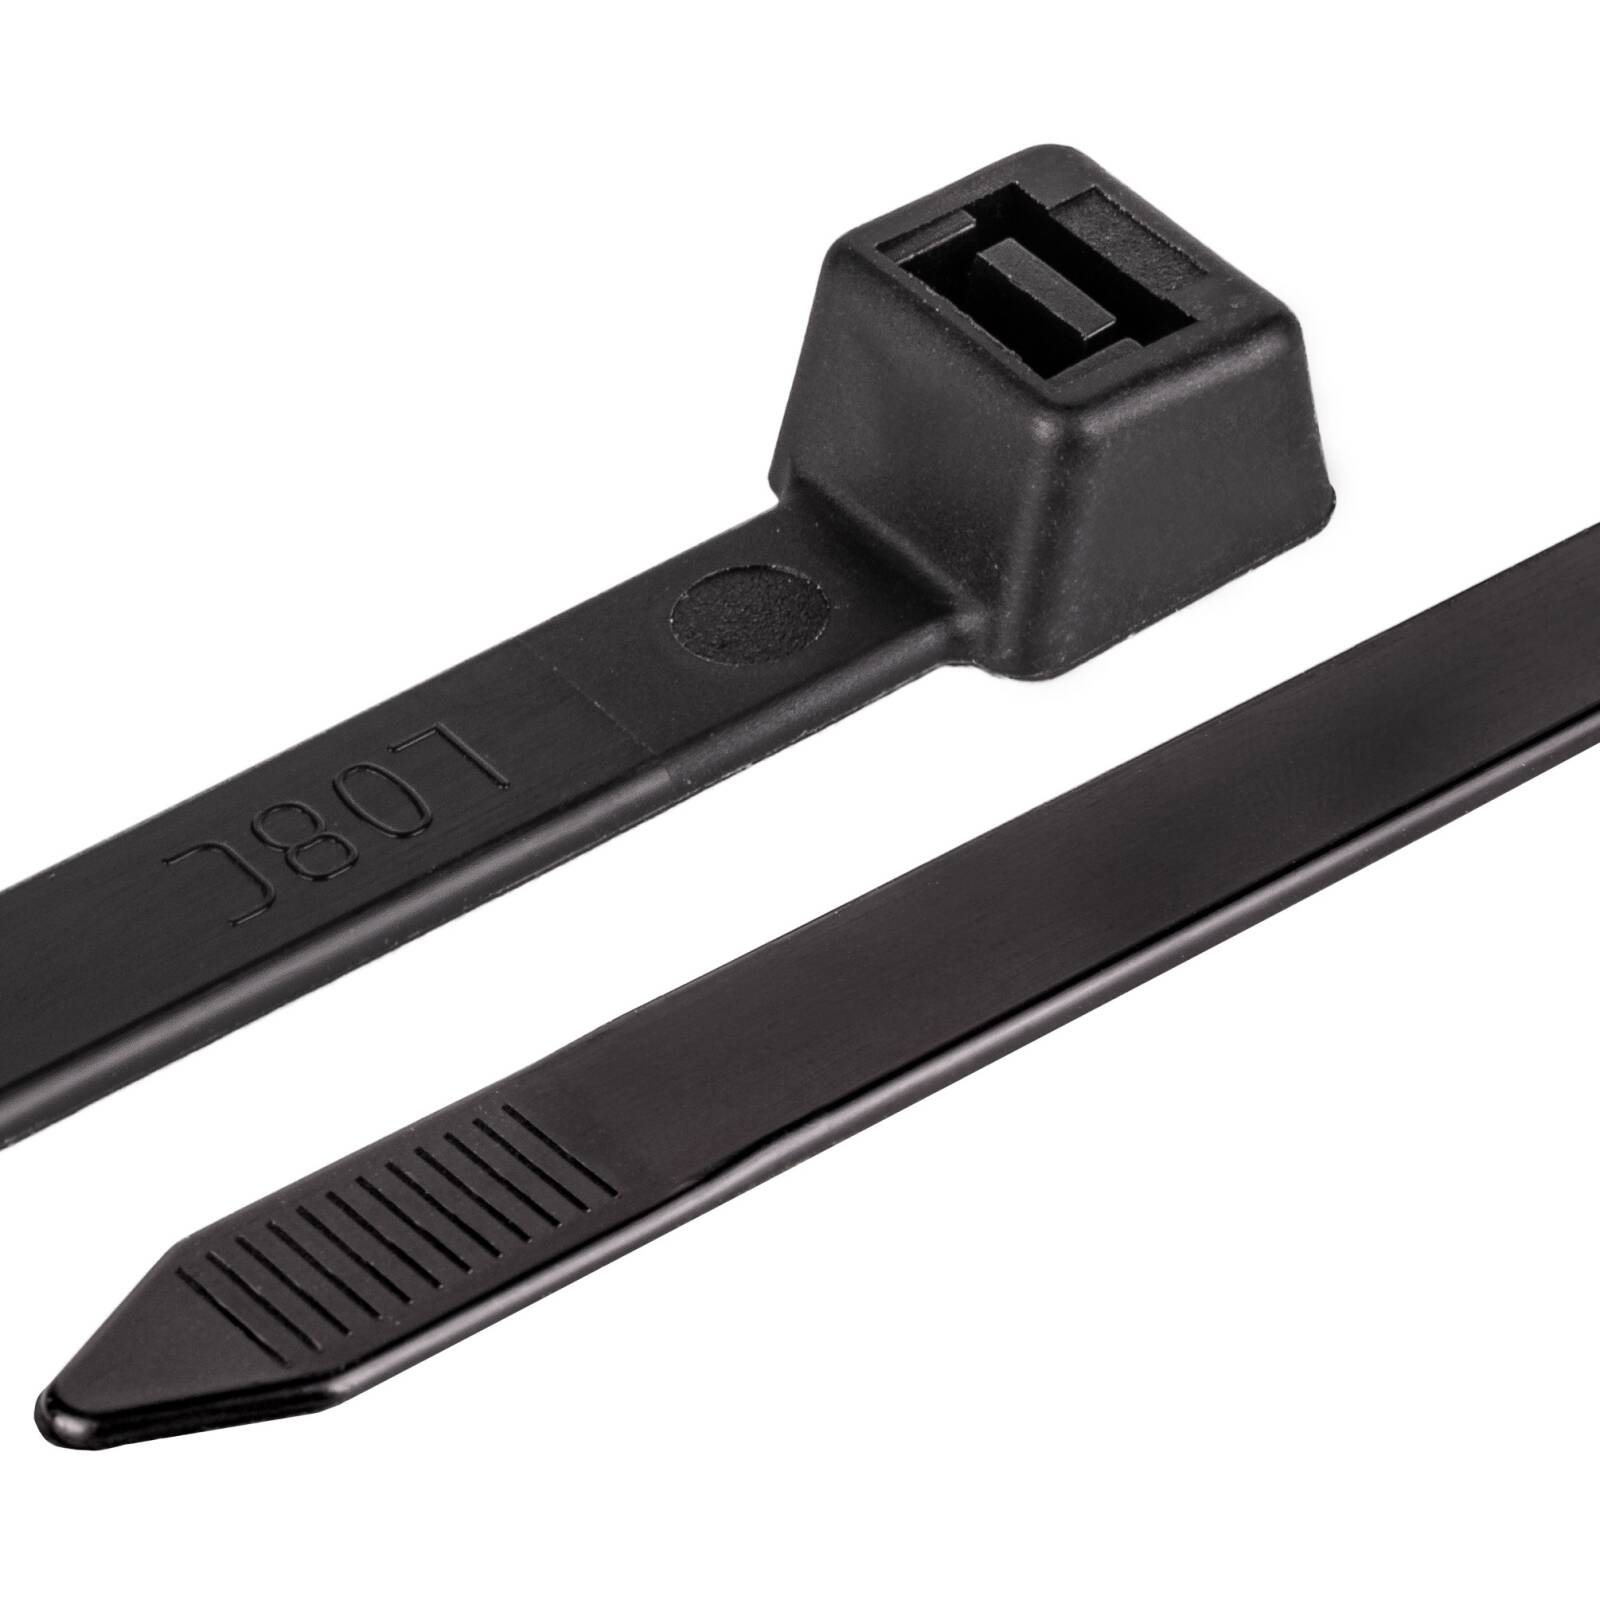 Kabelbinder schwarz 4,8 x 300 mm 100 Stück Kabelstraps - Industri